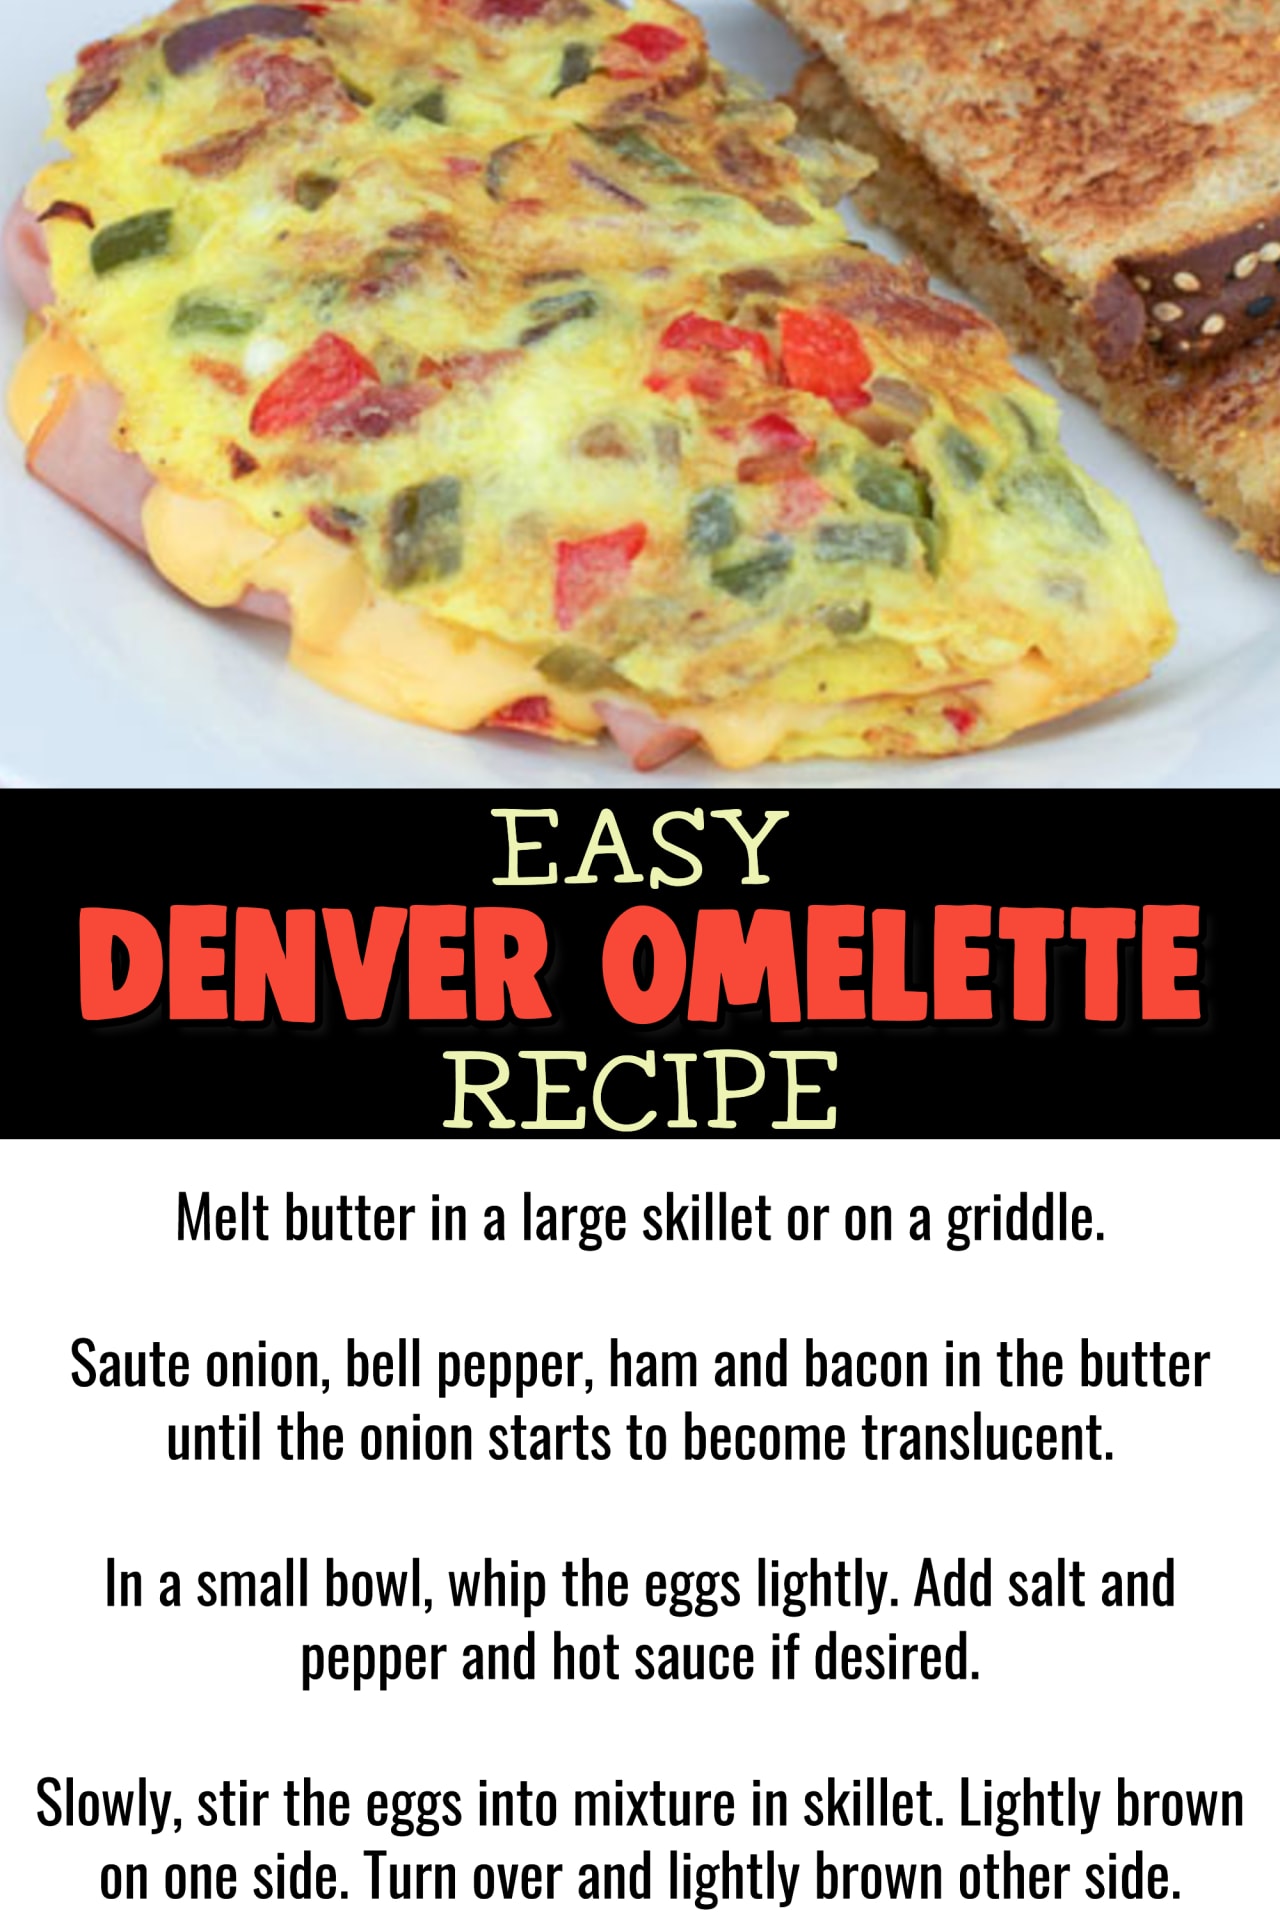 Omelette Recipes - Easy Healthy Omelette Recipes For Beginners - How to make an omelette videos - easy breakfast food ideas - best easy omelette recipes - basic omelette recipes for breakfast - easy denver omelette recipe - how to make a simple denver egg omelette